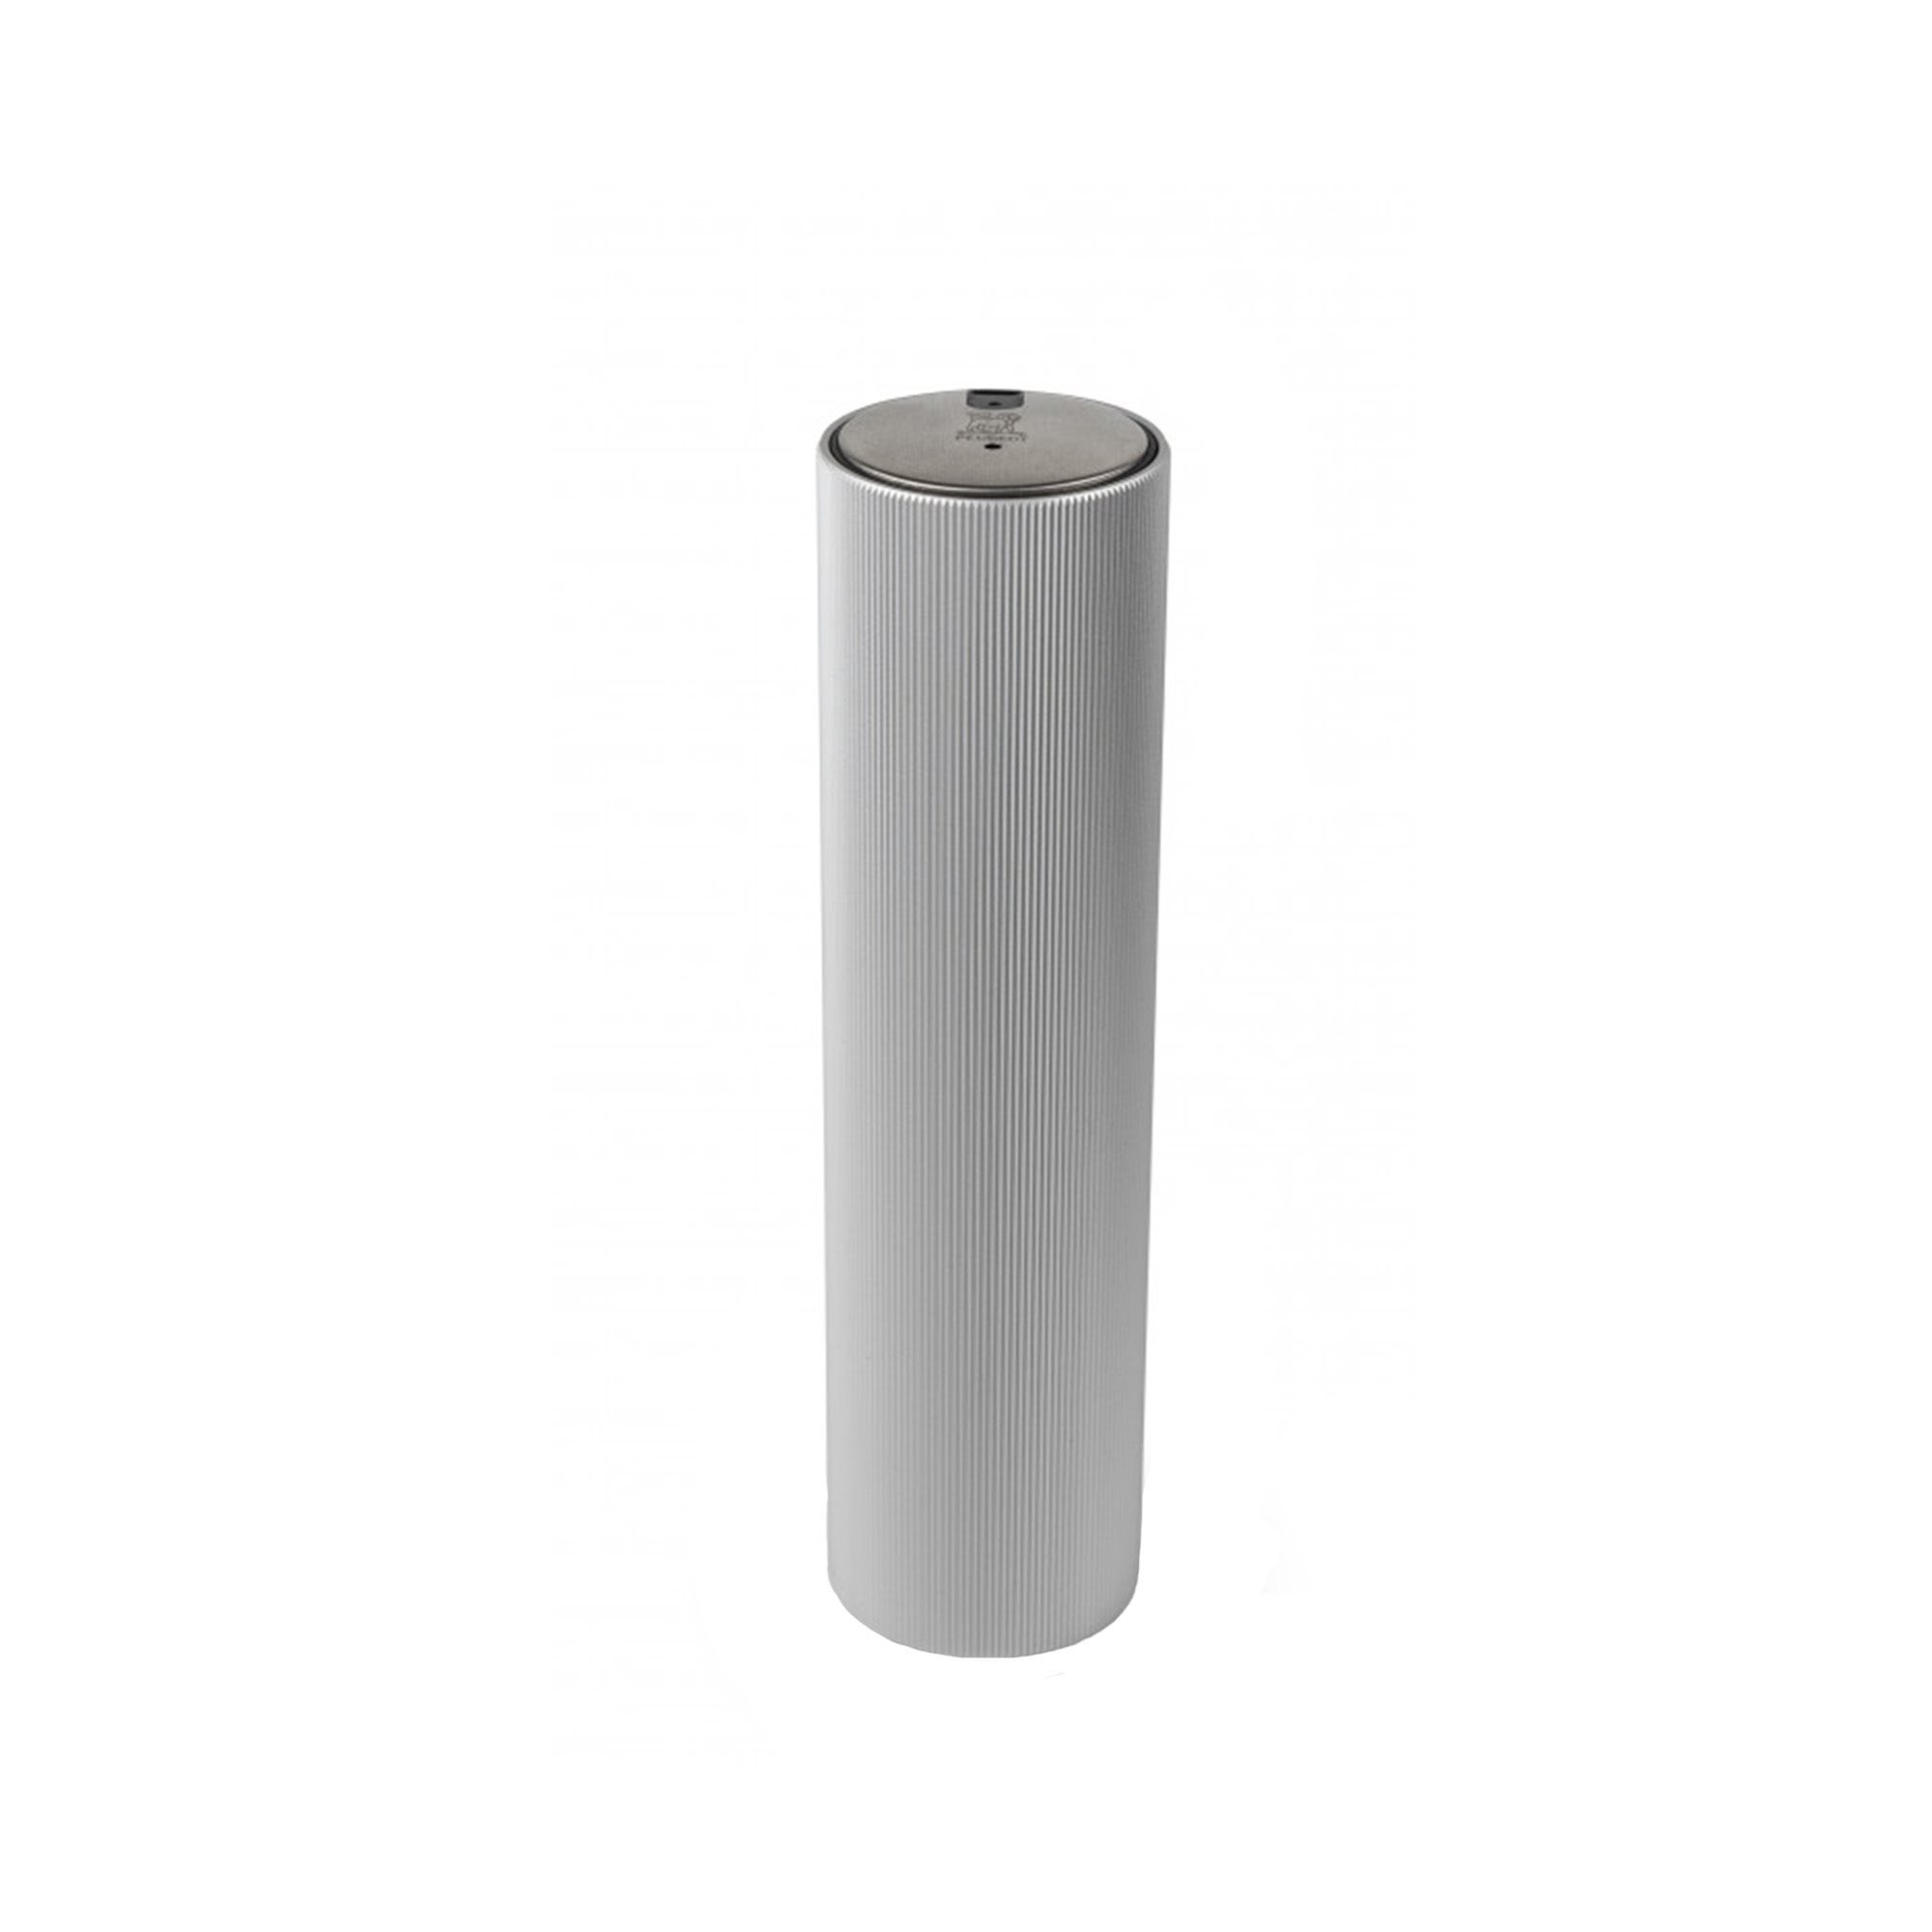 Cavatappi elettrico, alluminio, 21 cm, grigio chiaro, Line